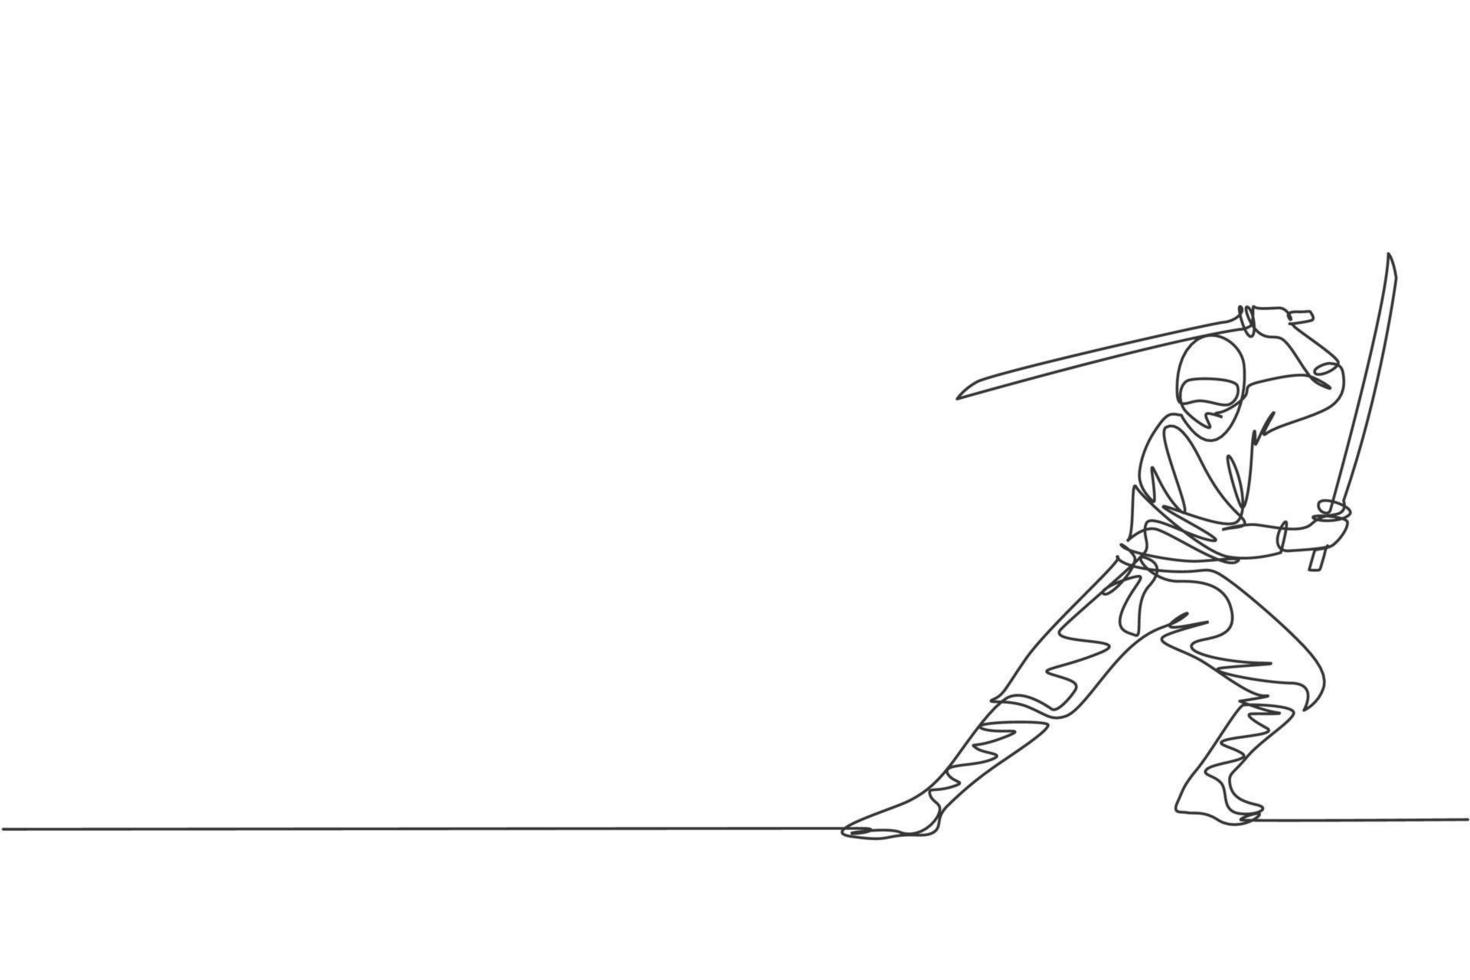 un dessin en ligne continu d'un jeune personnage ninja japonais courageux sur un costume noir avec une position d'attaque. concept de combat d'art martial. illustration vectorielle graphique de conception de dessin à une seule ligne dynamique vecteur